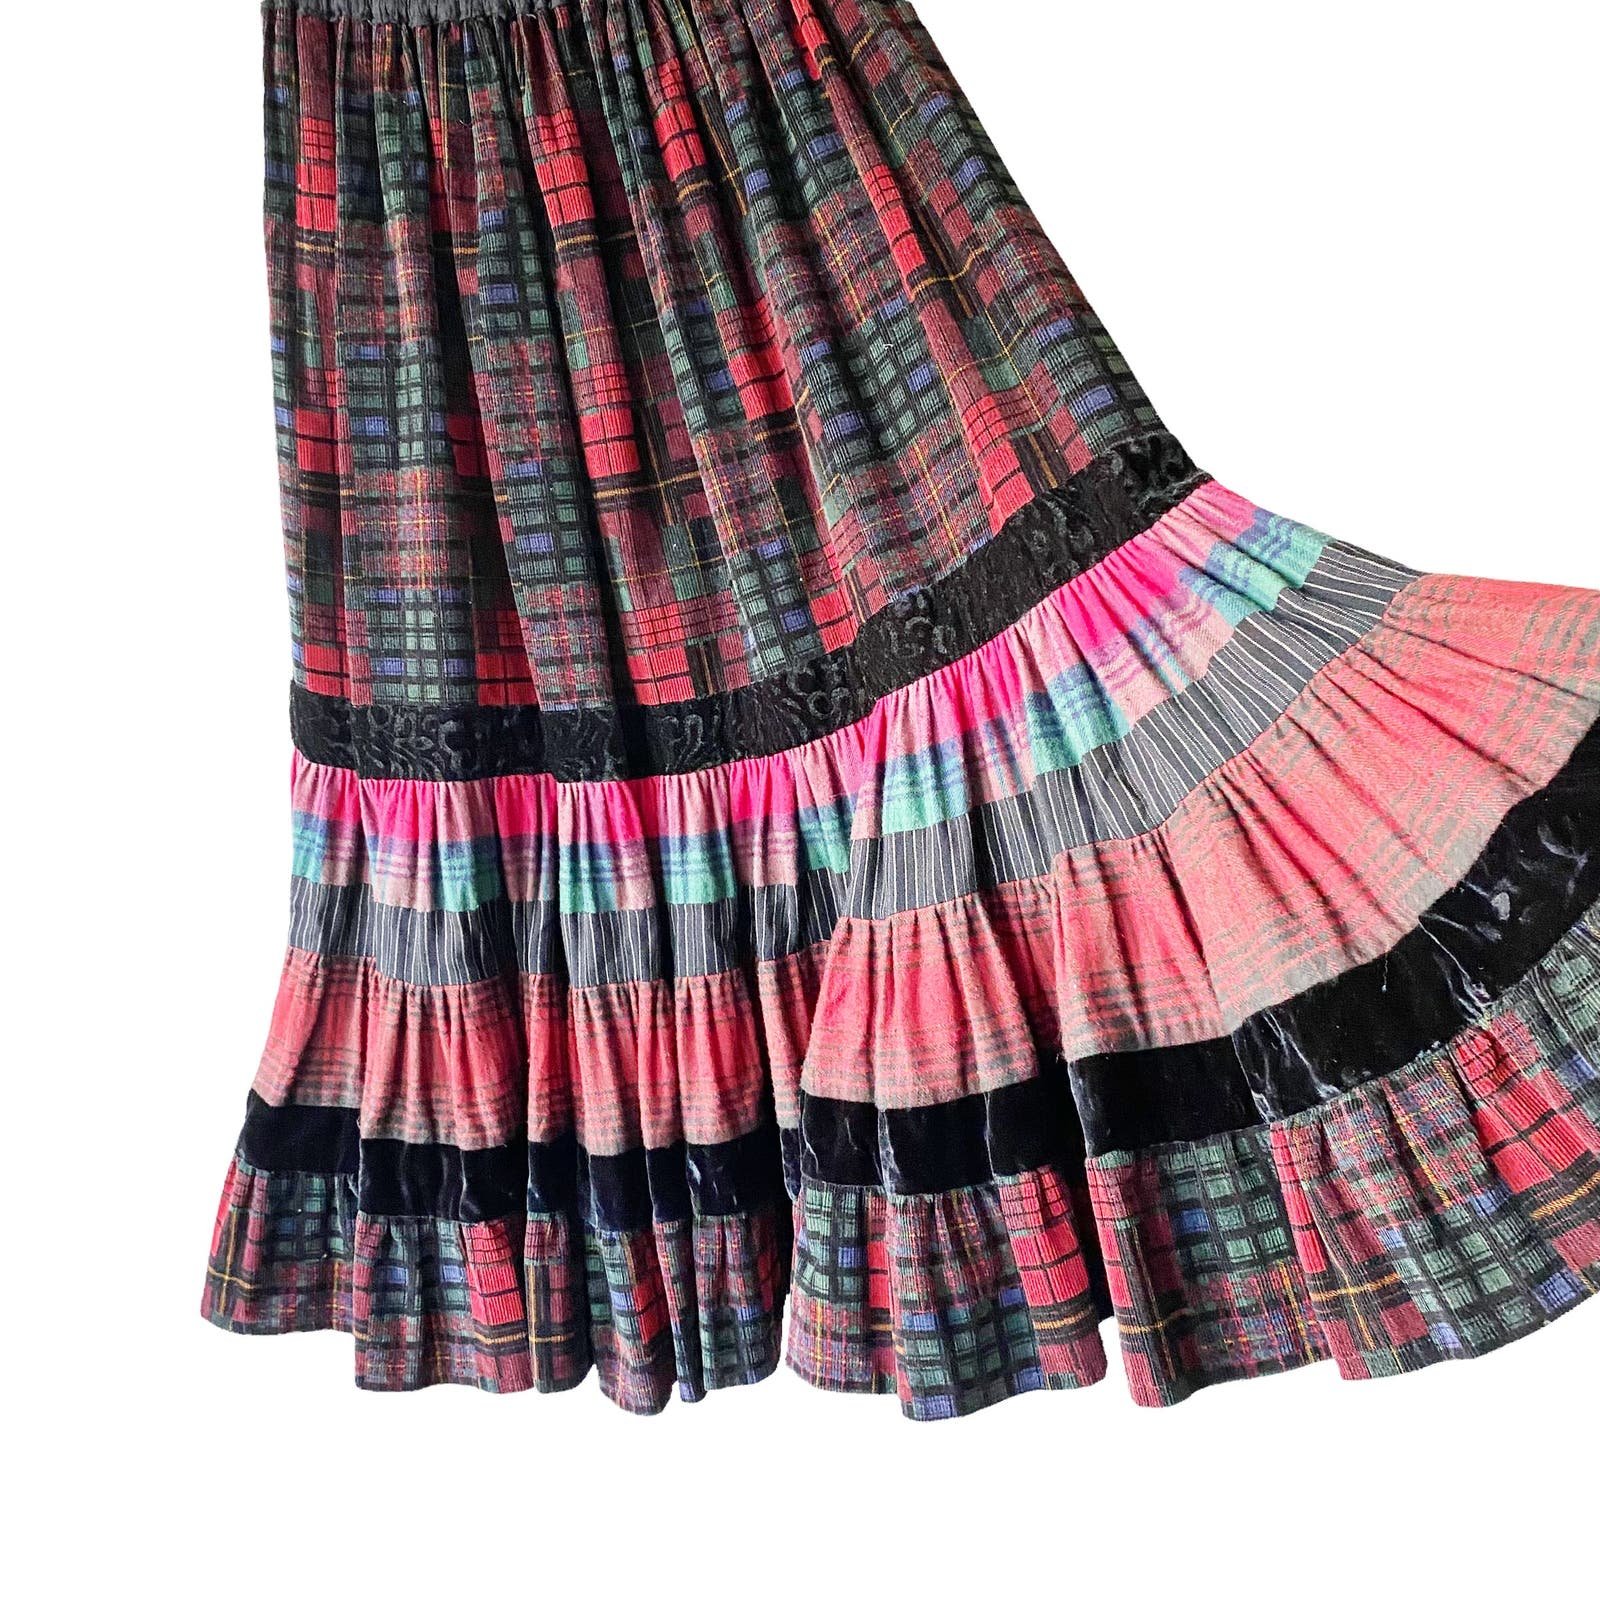 Simple Vintage Womens Plaid Corduroy Tiered Dark Academia Midi Skirt FRbLIJW3J Hot Sale